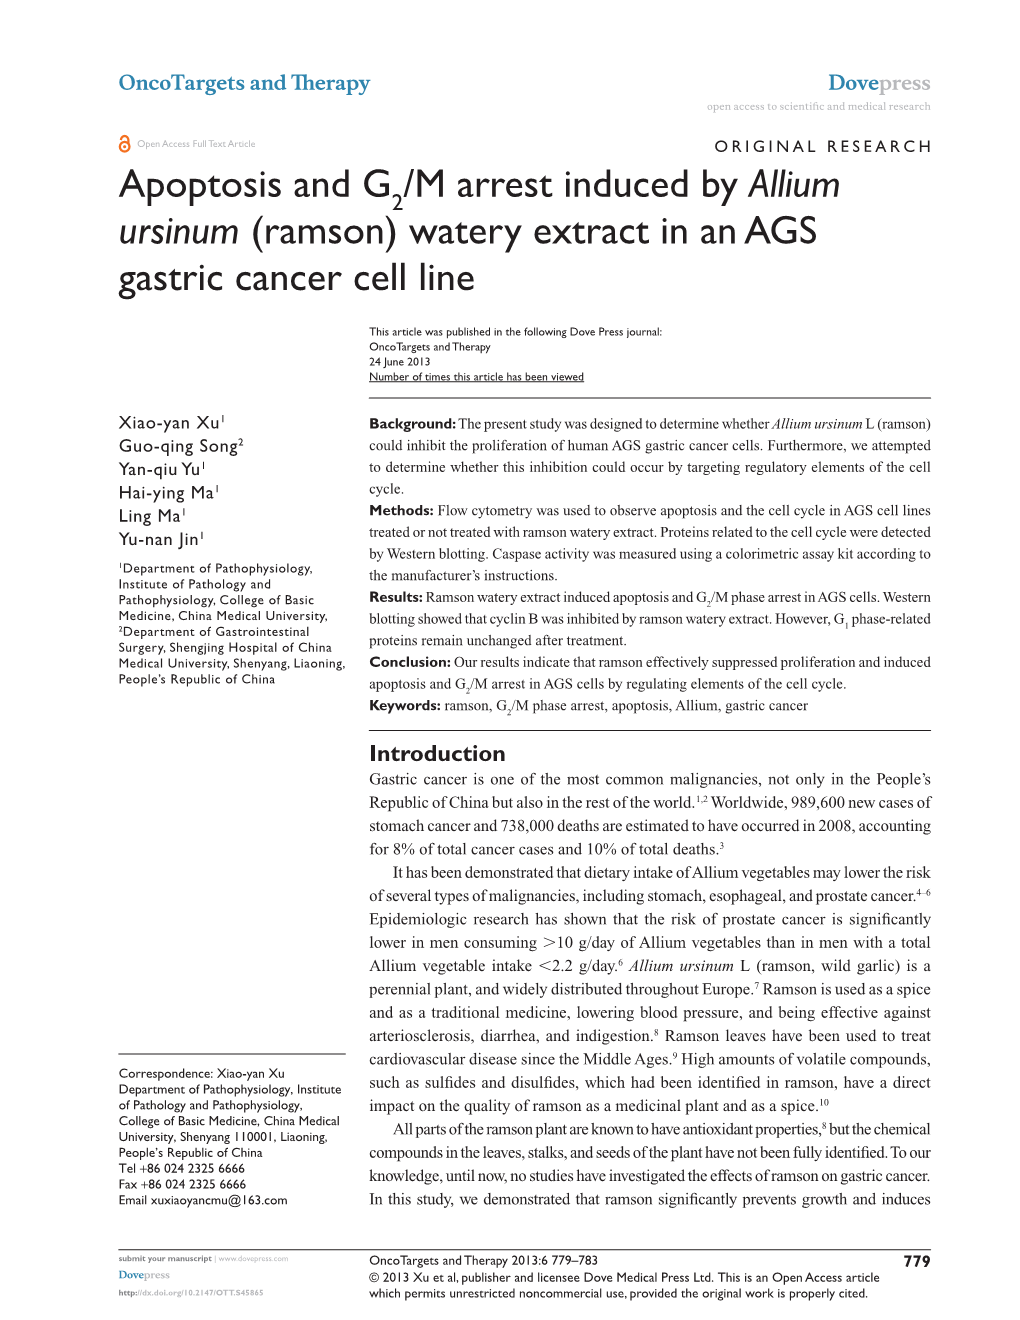 Apoptosis and G /M Arrest Induced by Allium Ursinum